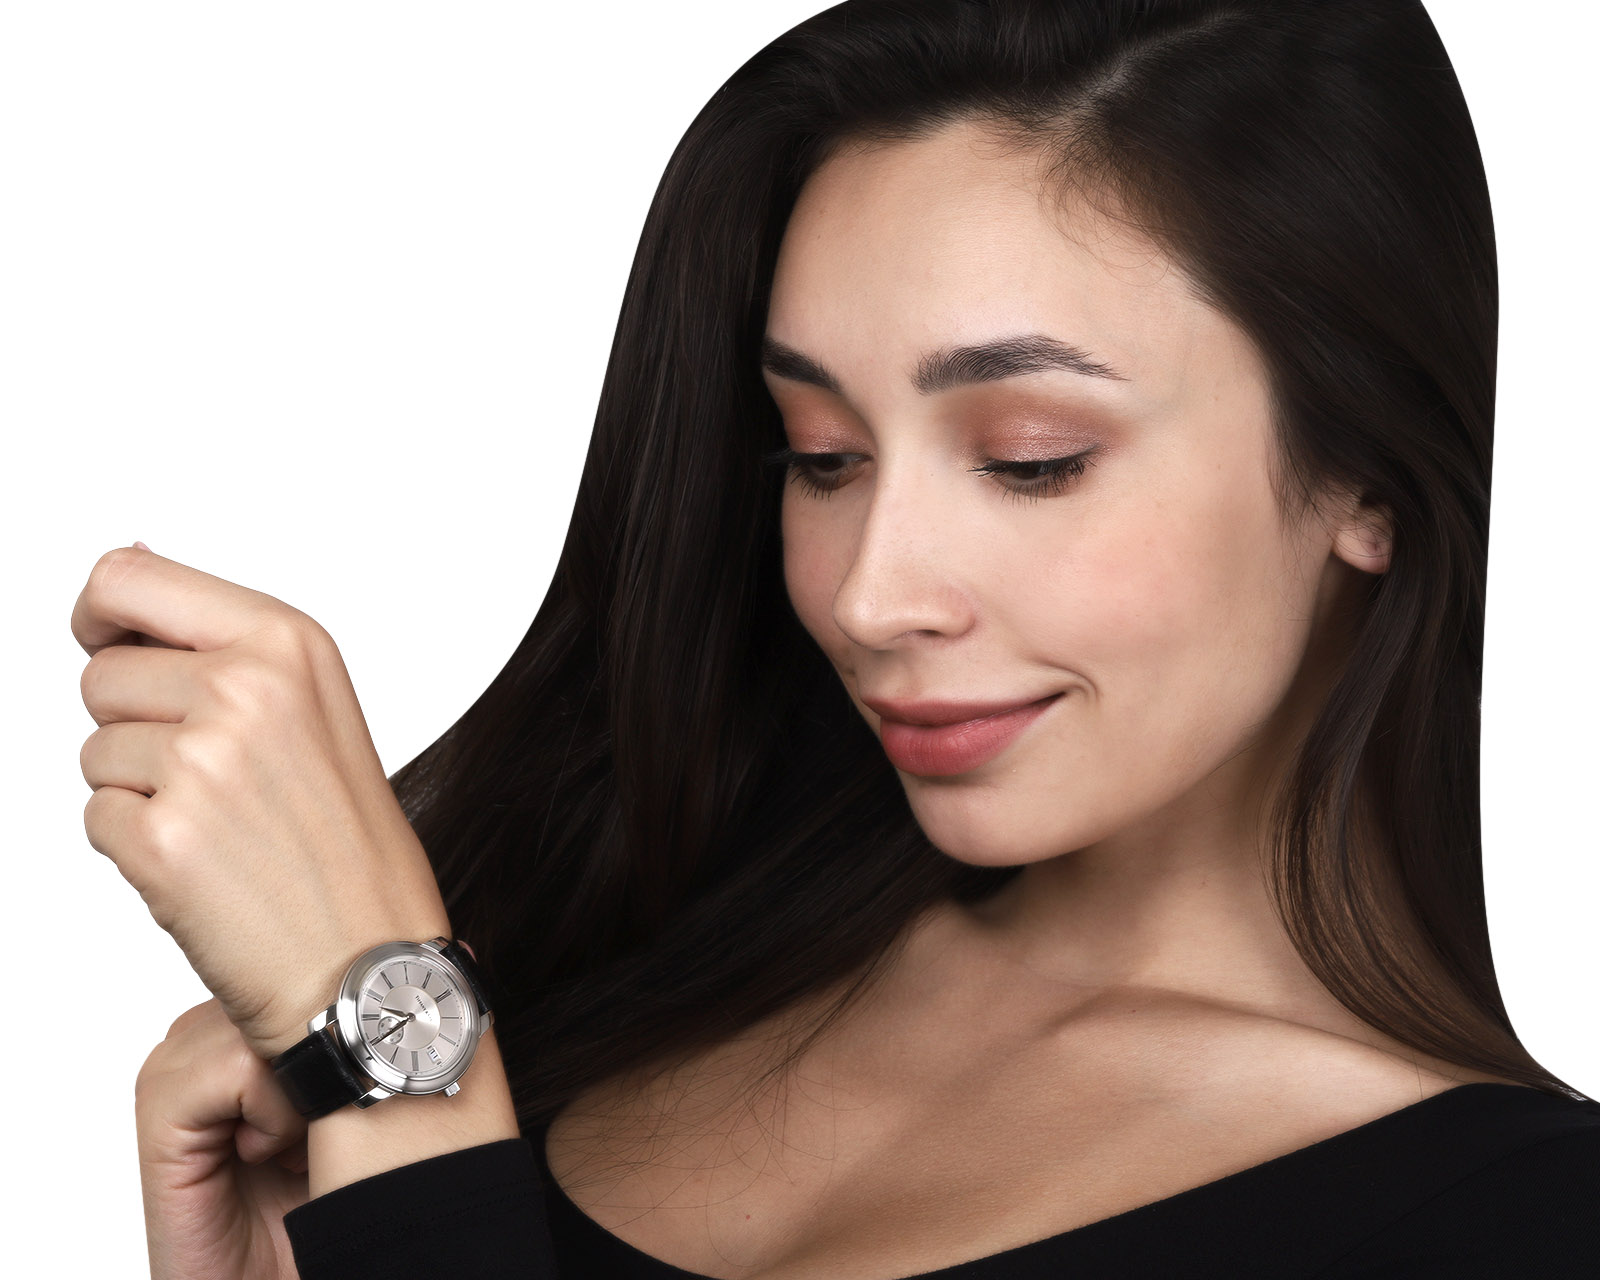 Оригинальные стальные часы Tiffany&Co Mark